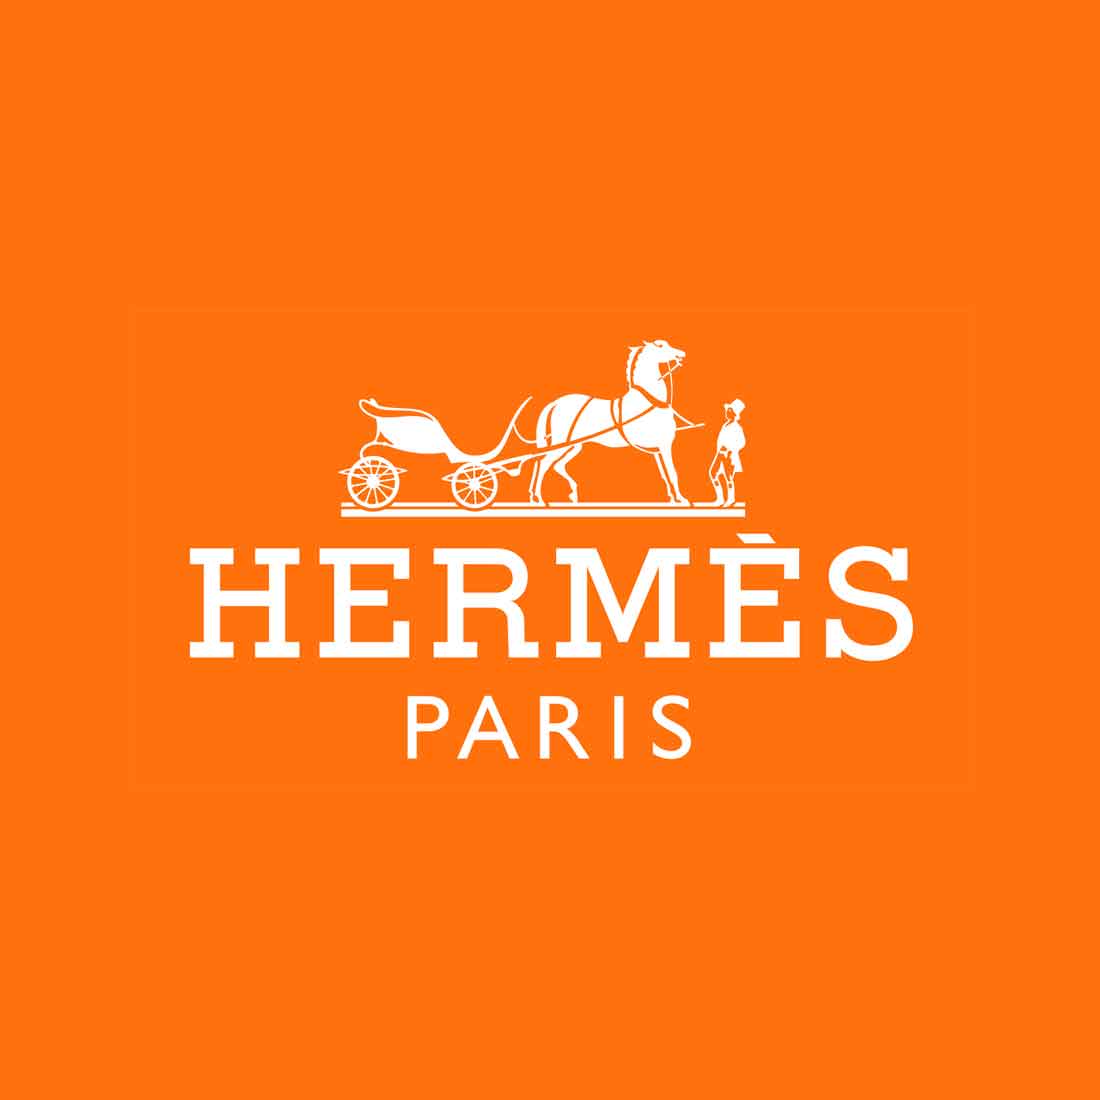 Von der Kutsche zum Luxus: Die Entwicklung des Hermès-Logos